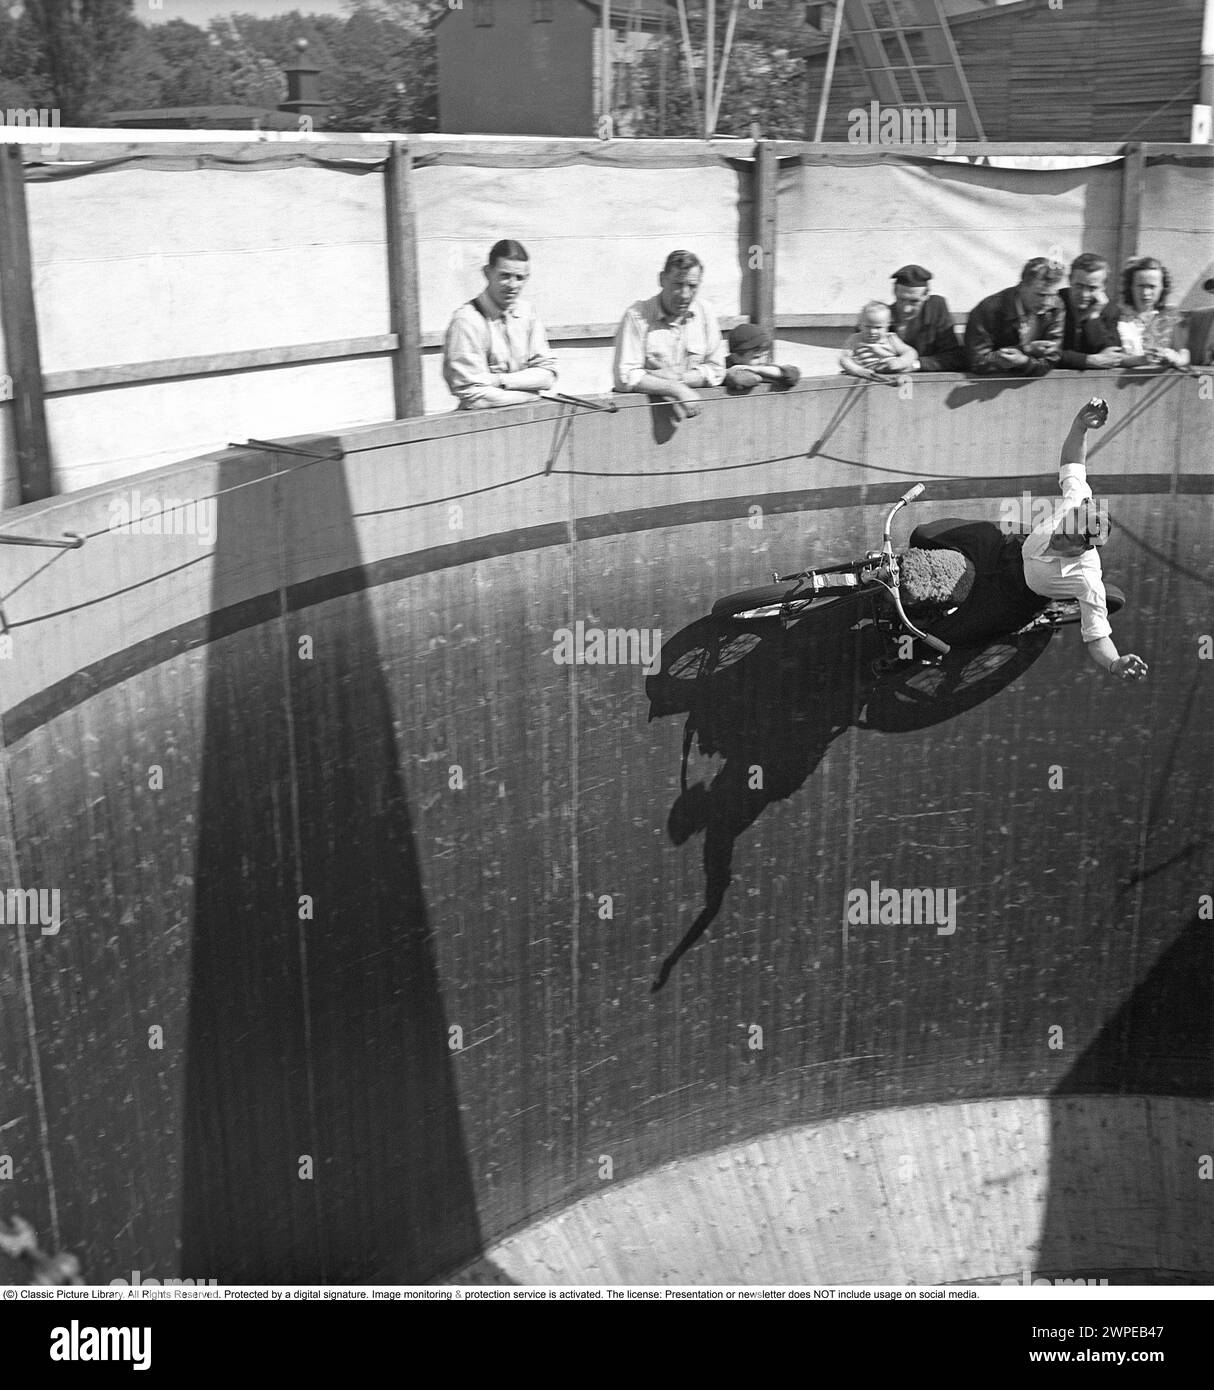 Mauer des Todes 1949. Die Mauer des Todes, das Motordrome, das Velodrome oder der Brunnen des Todes ist eine Nebenausstellung des Karnevals mit einem silos- oder tonnenförmigen Holzzylinder mit einem Durchmesser von normalerweise 6,1 bis 11,0 m (20 bis 36 Fuß) und aus Holzdielen, in der Motorradfahrer entlang der vertikalen Wand fahren und Stunts durchführen. durch Reibung und Zentrifugalkraft gehalten. Die ursprüngliche Mauer des Todes befand sich 1911 auf Coney Island in den Vereinigten Staaten. Ich habe mir einen Motorradfahrer in hoher Geschwindigkeit im Velodrome vorgestellt, der mit den Händen in der Luft zeigte, nicht wie er sollte am Lenker. Schweden 1949. Conard Stockfoto